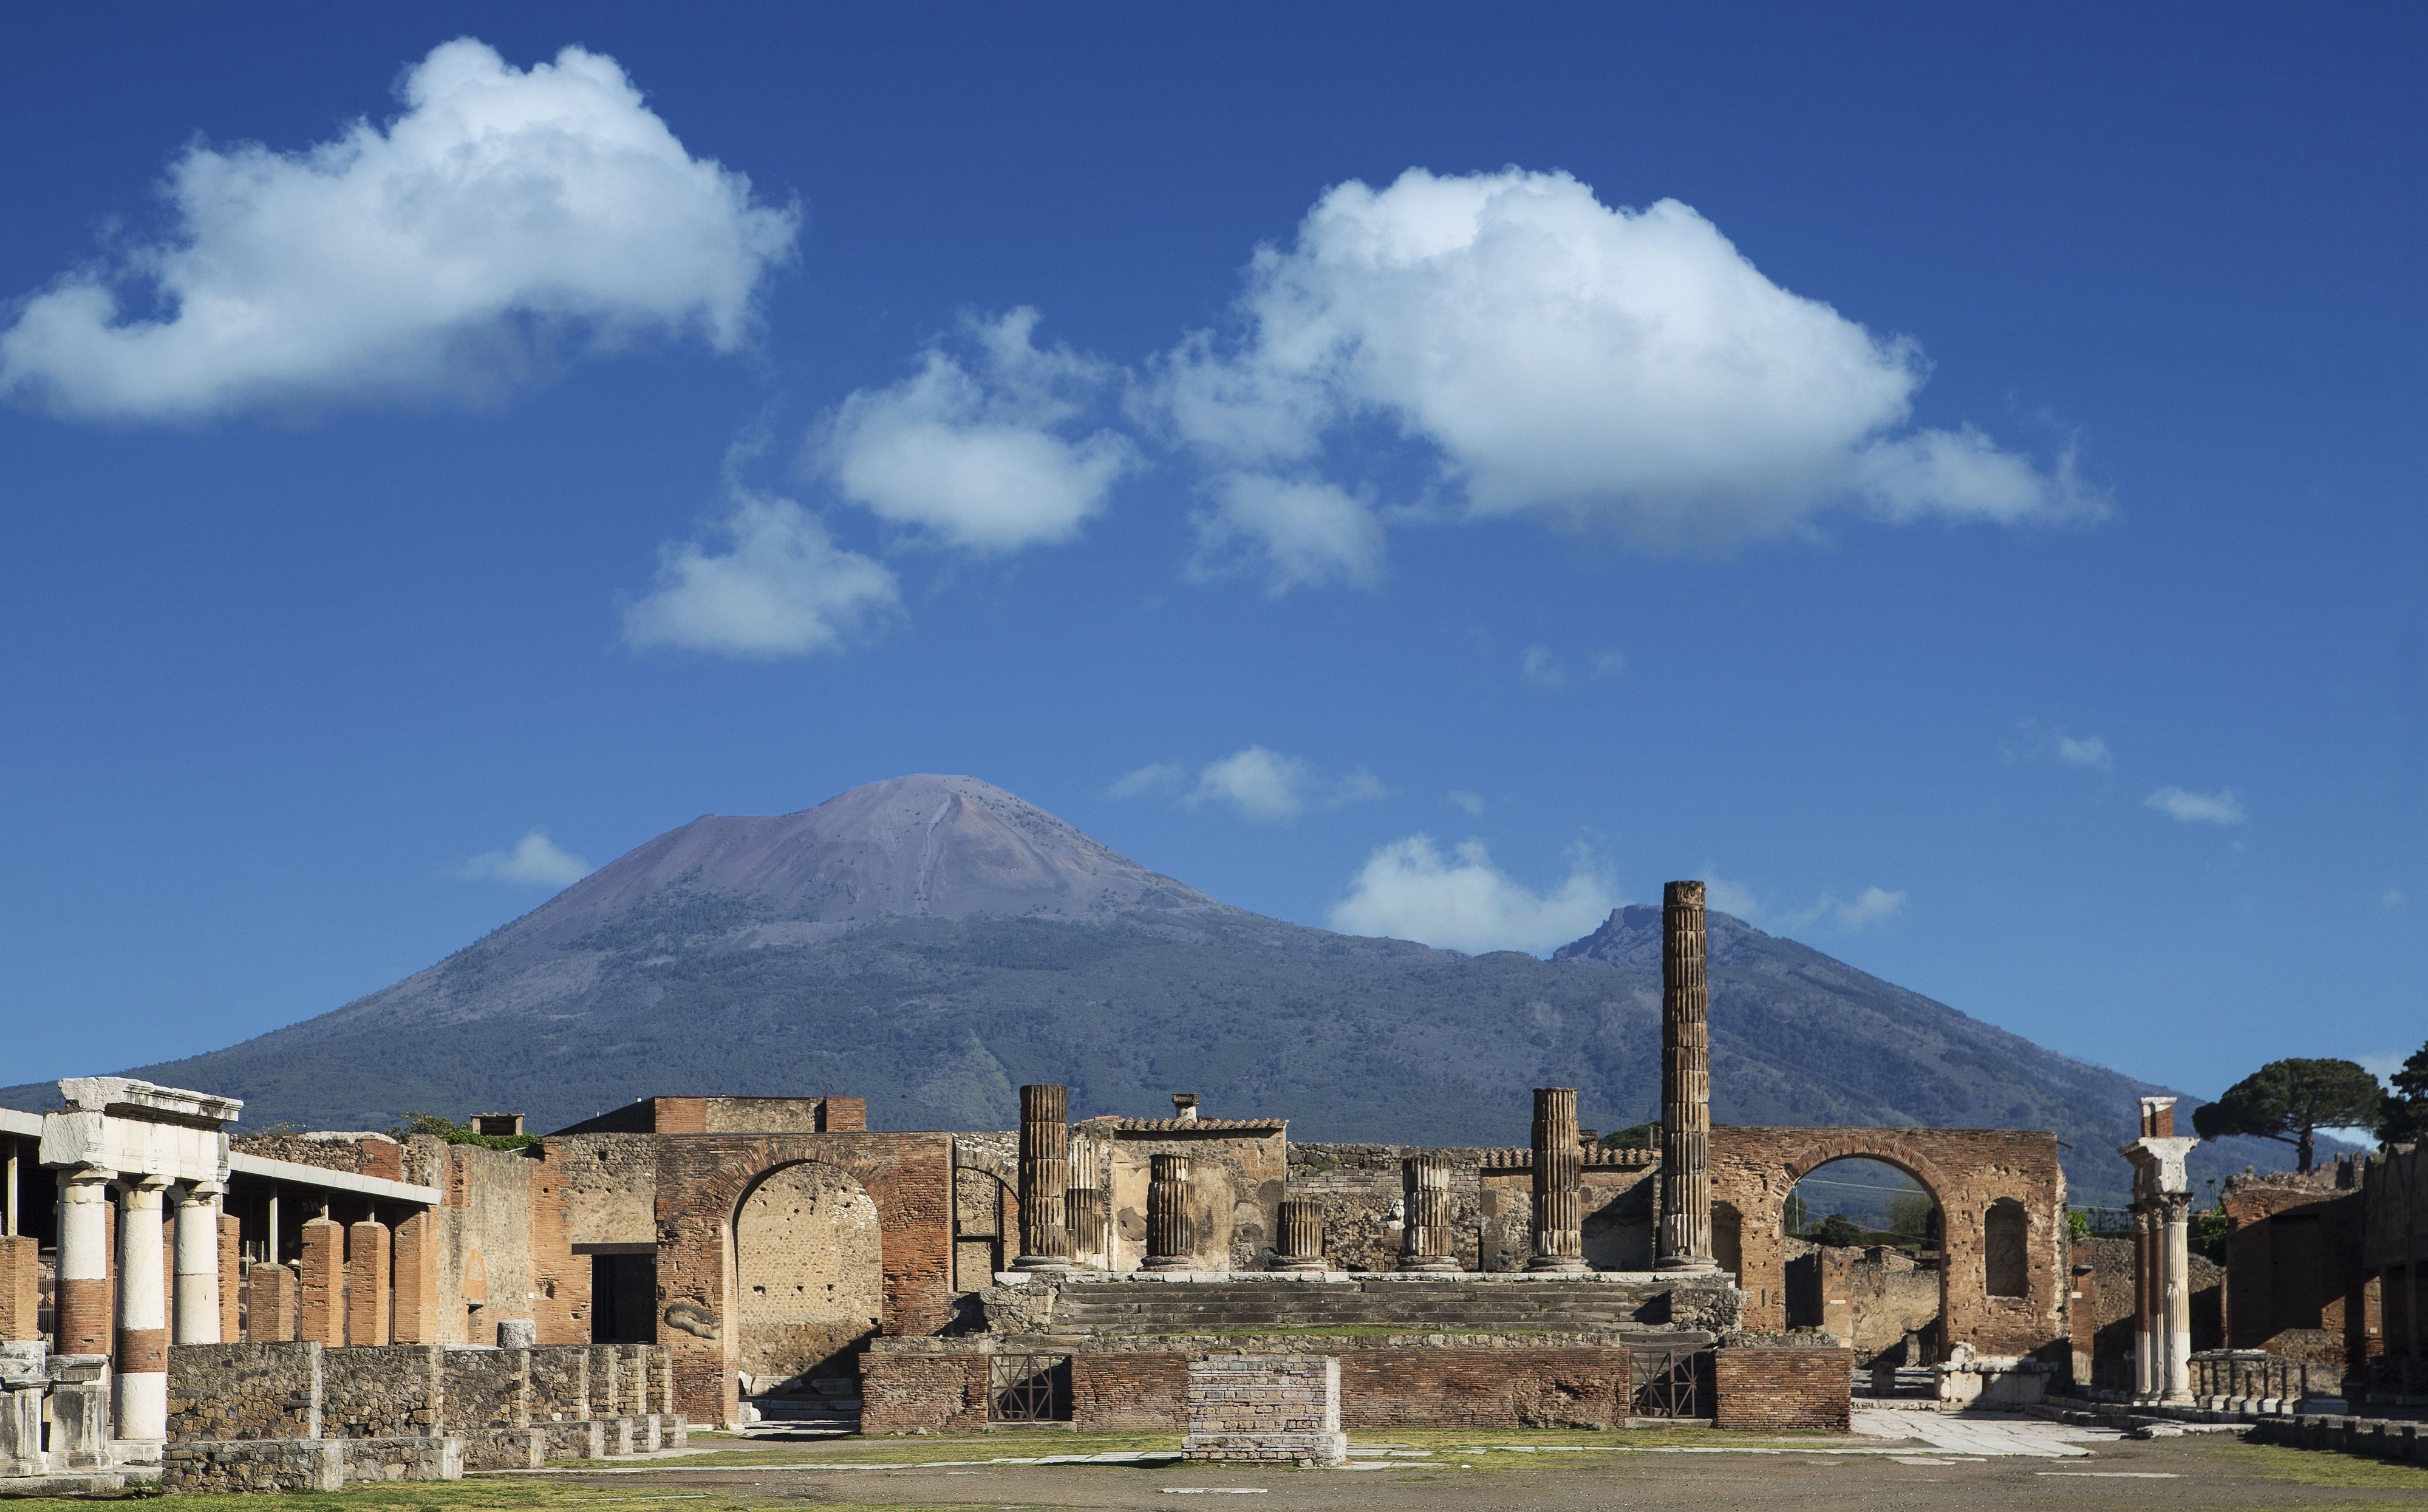 vulcan-vesuvio-and-pompei-ruins-the-forum-170423945-579cad323df78c32761d97c8.jpg